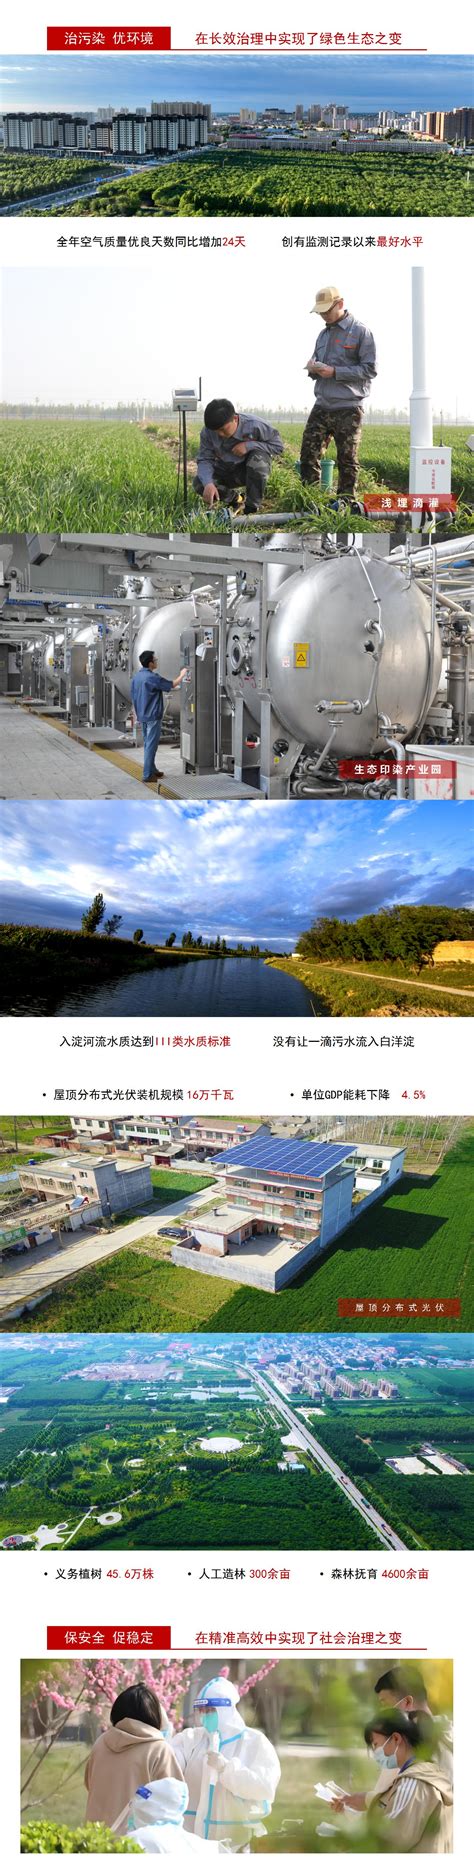 高阳县庞佐工业园区八个项目修建性详细规划公示--高阳县人民政府网站